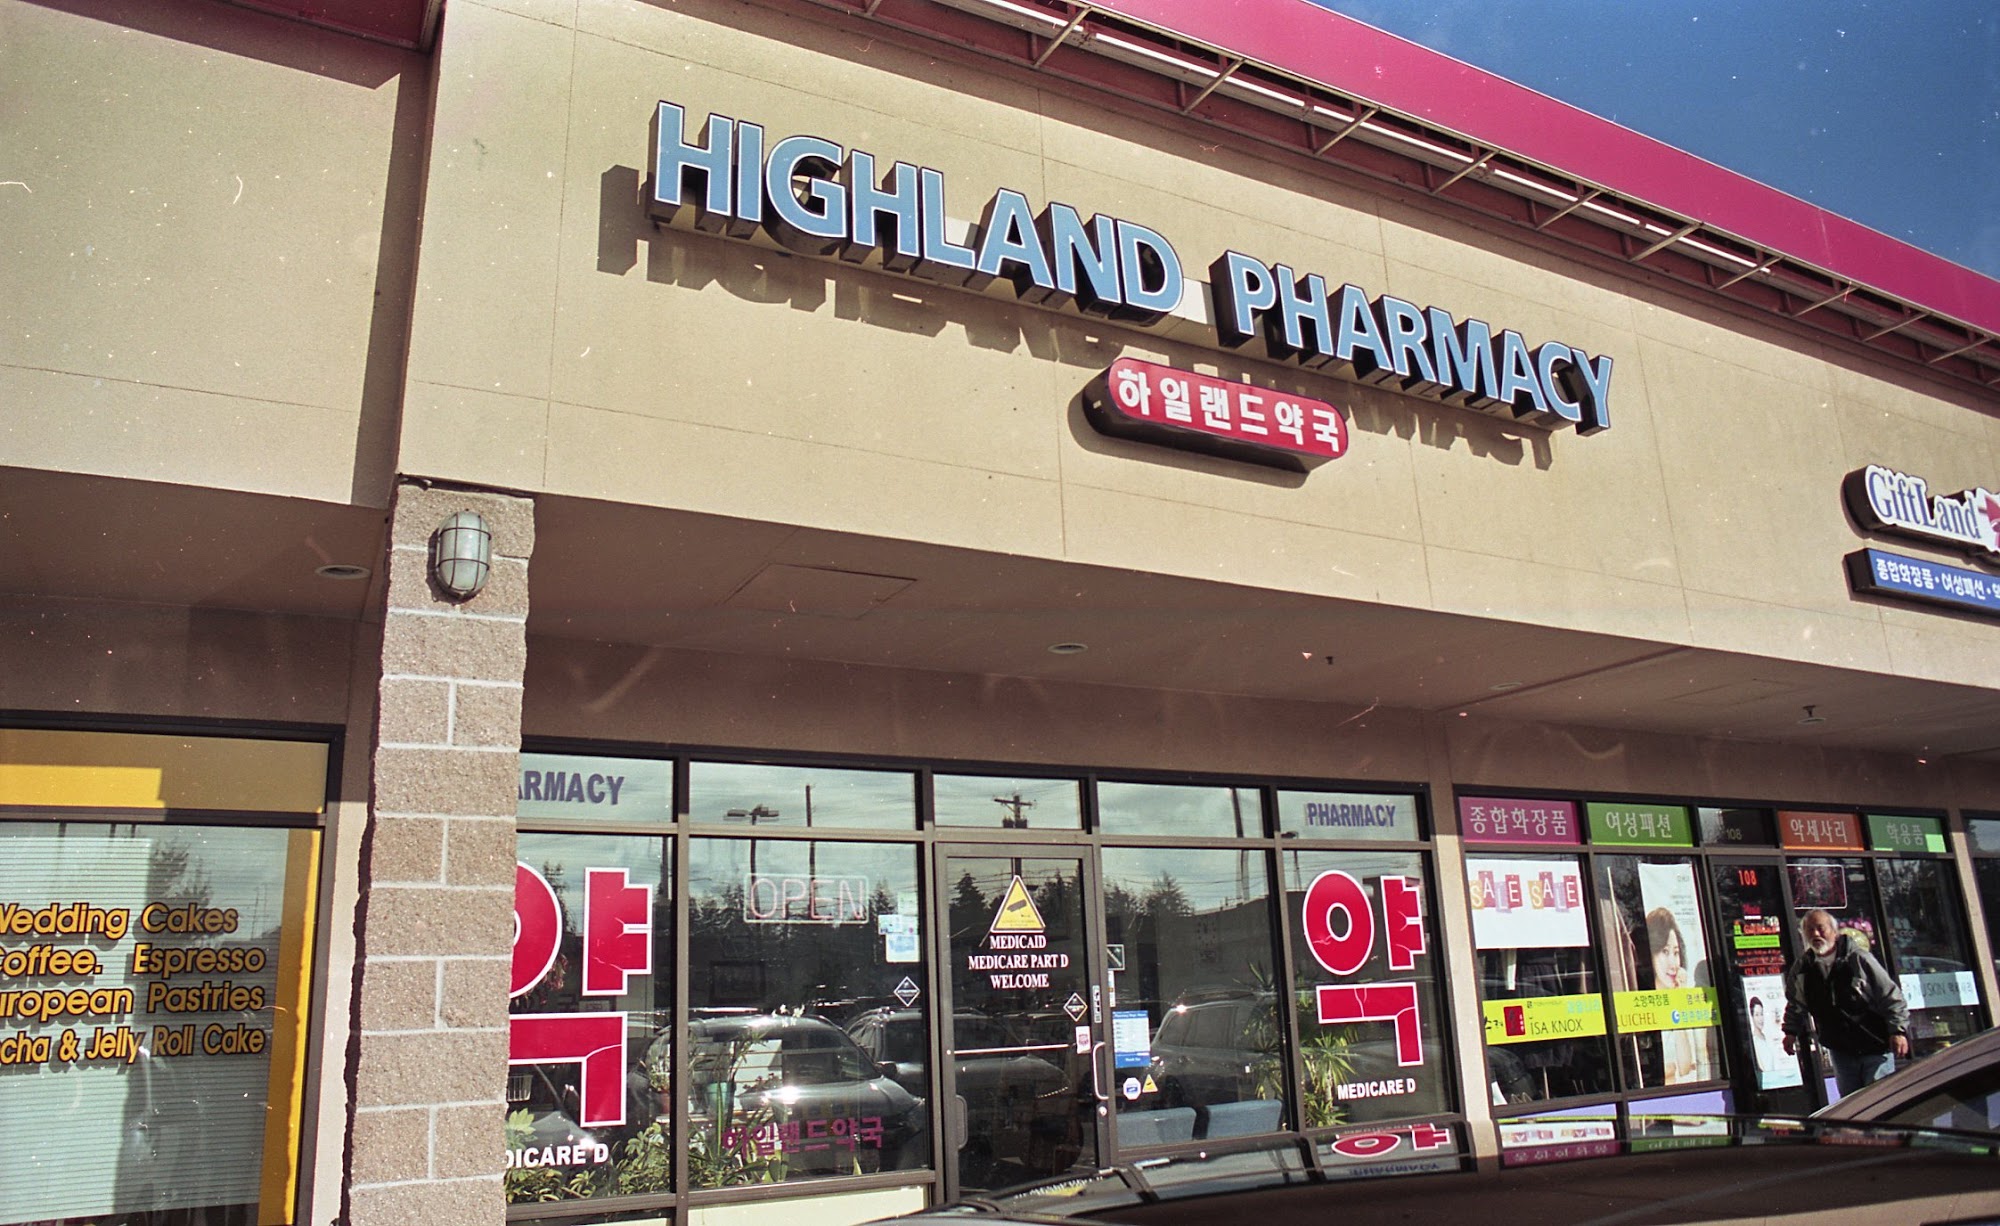 Highland Pharmacy